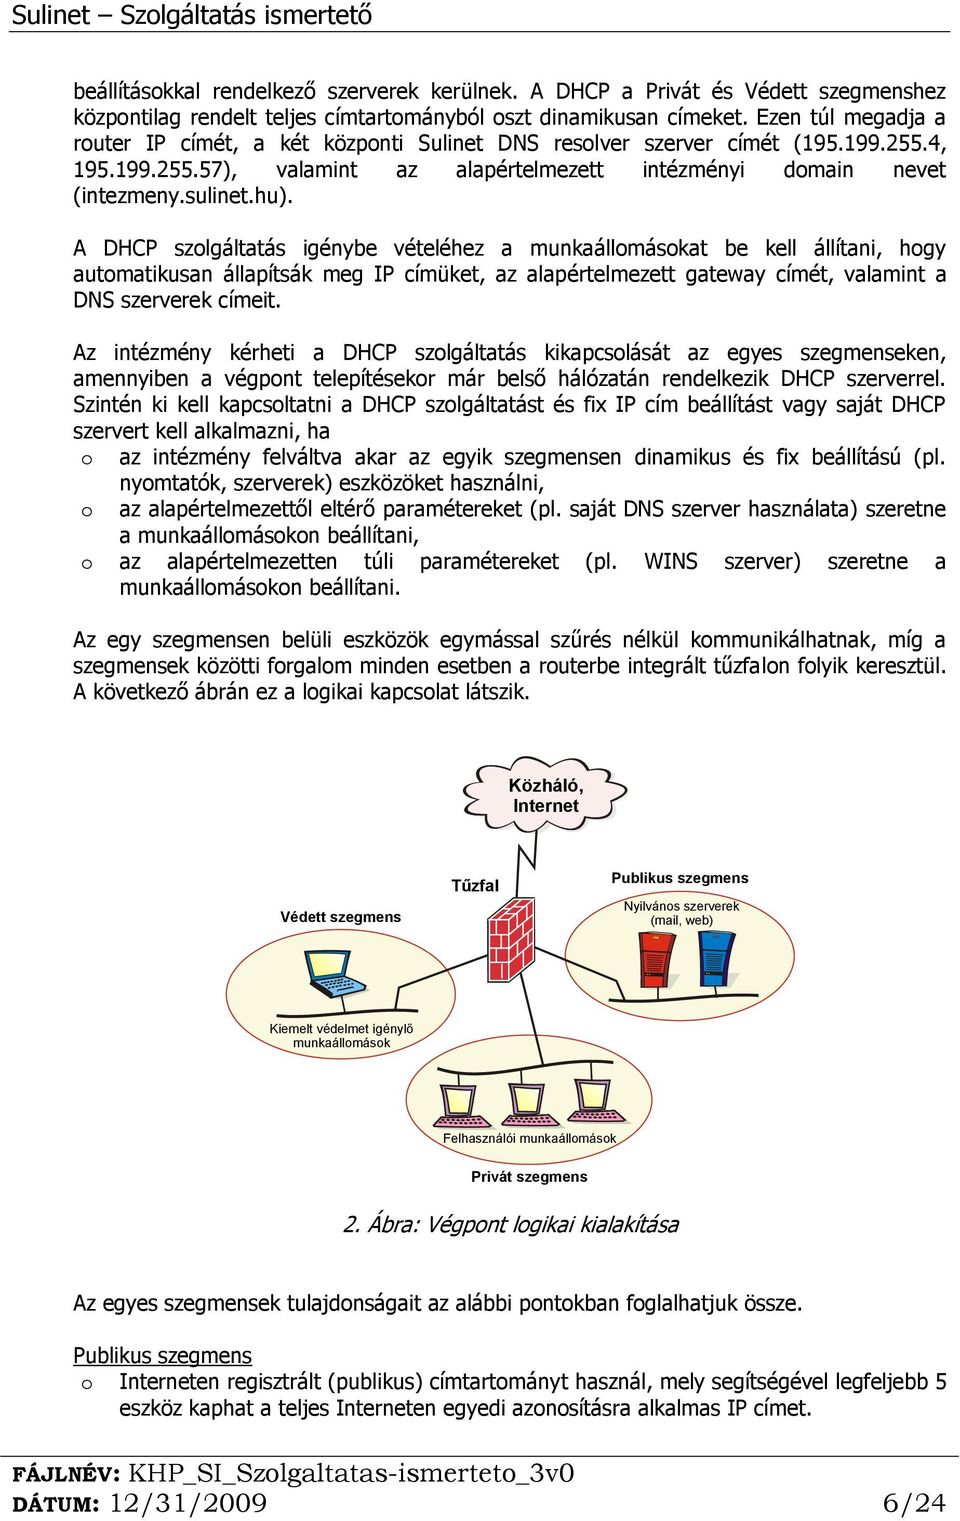 KözHáló3 Sulinet Program keretében az Intézményi végpontok számára  nyújtott. Internet. szolgáltatások ismertetése - PDF Free Download